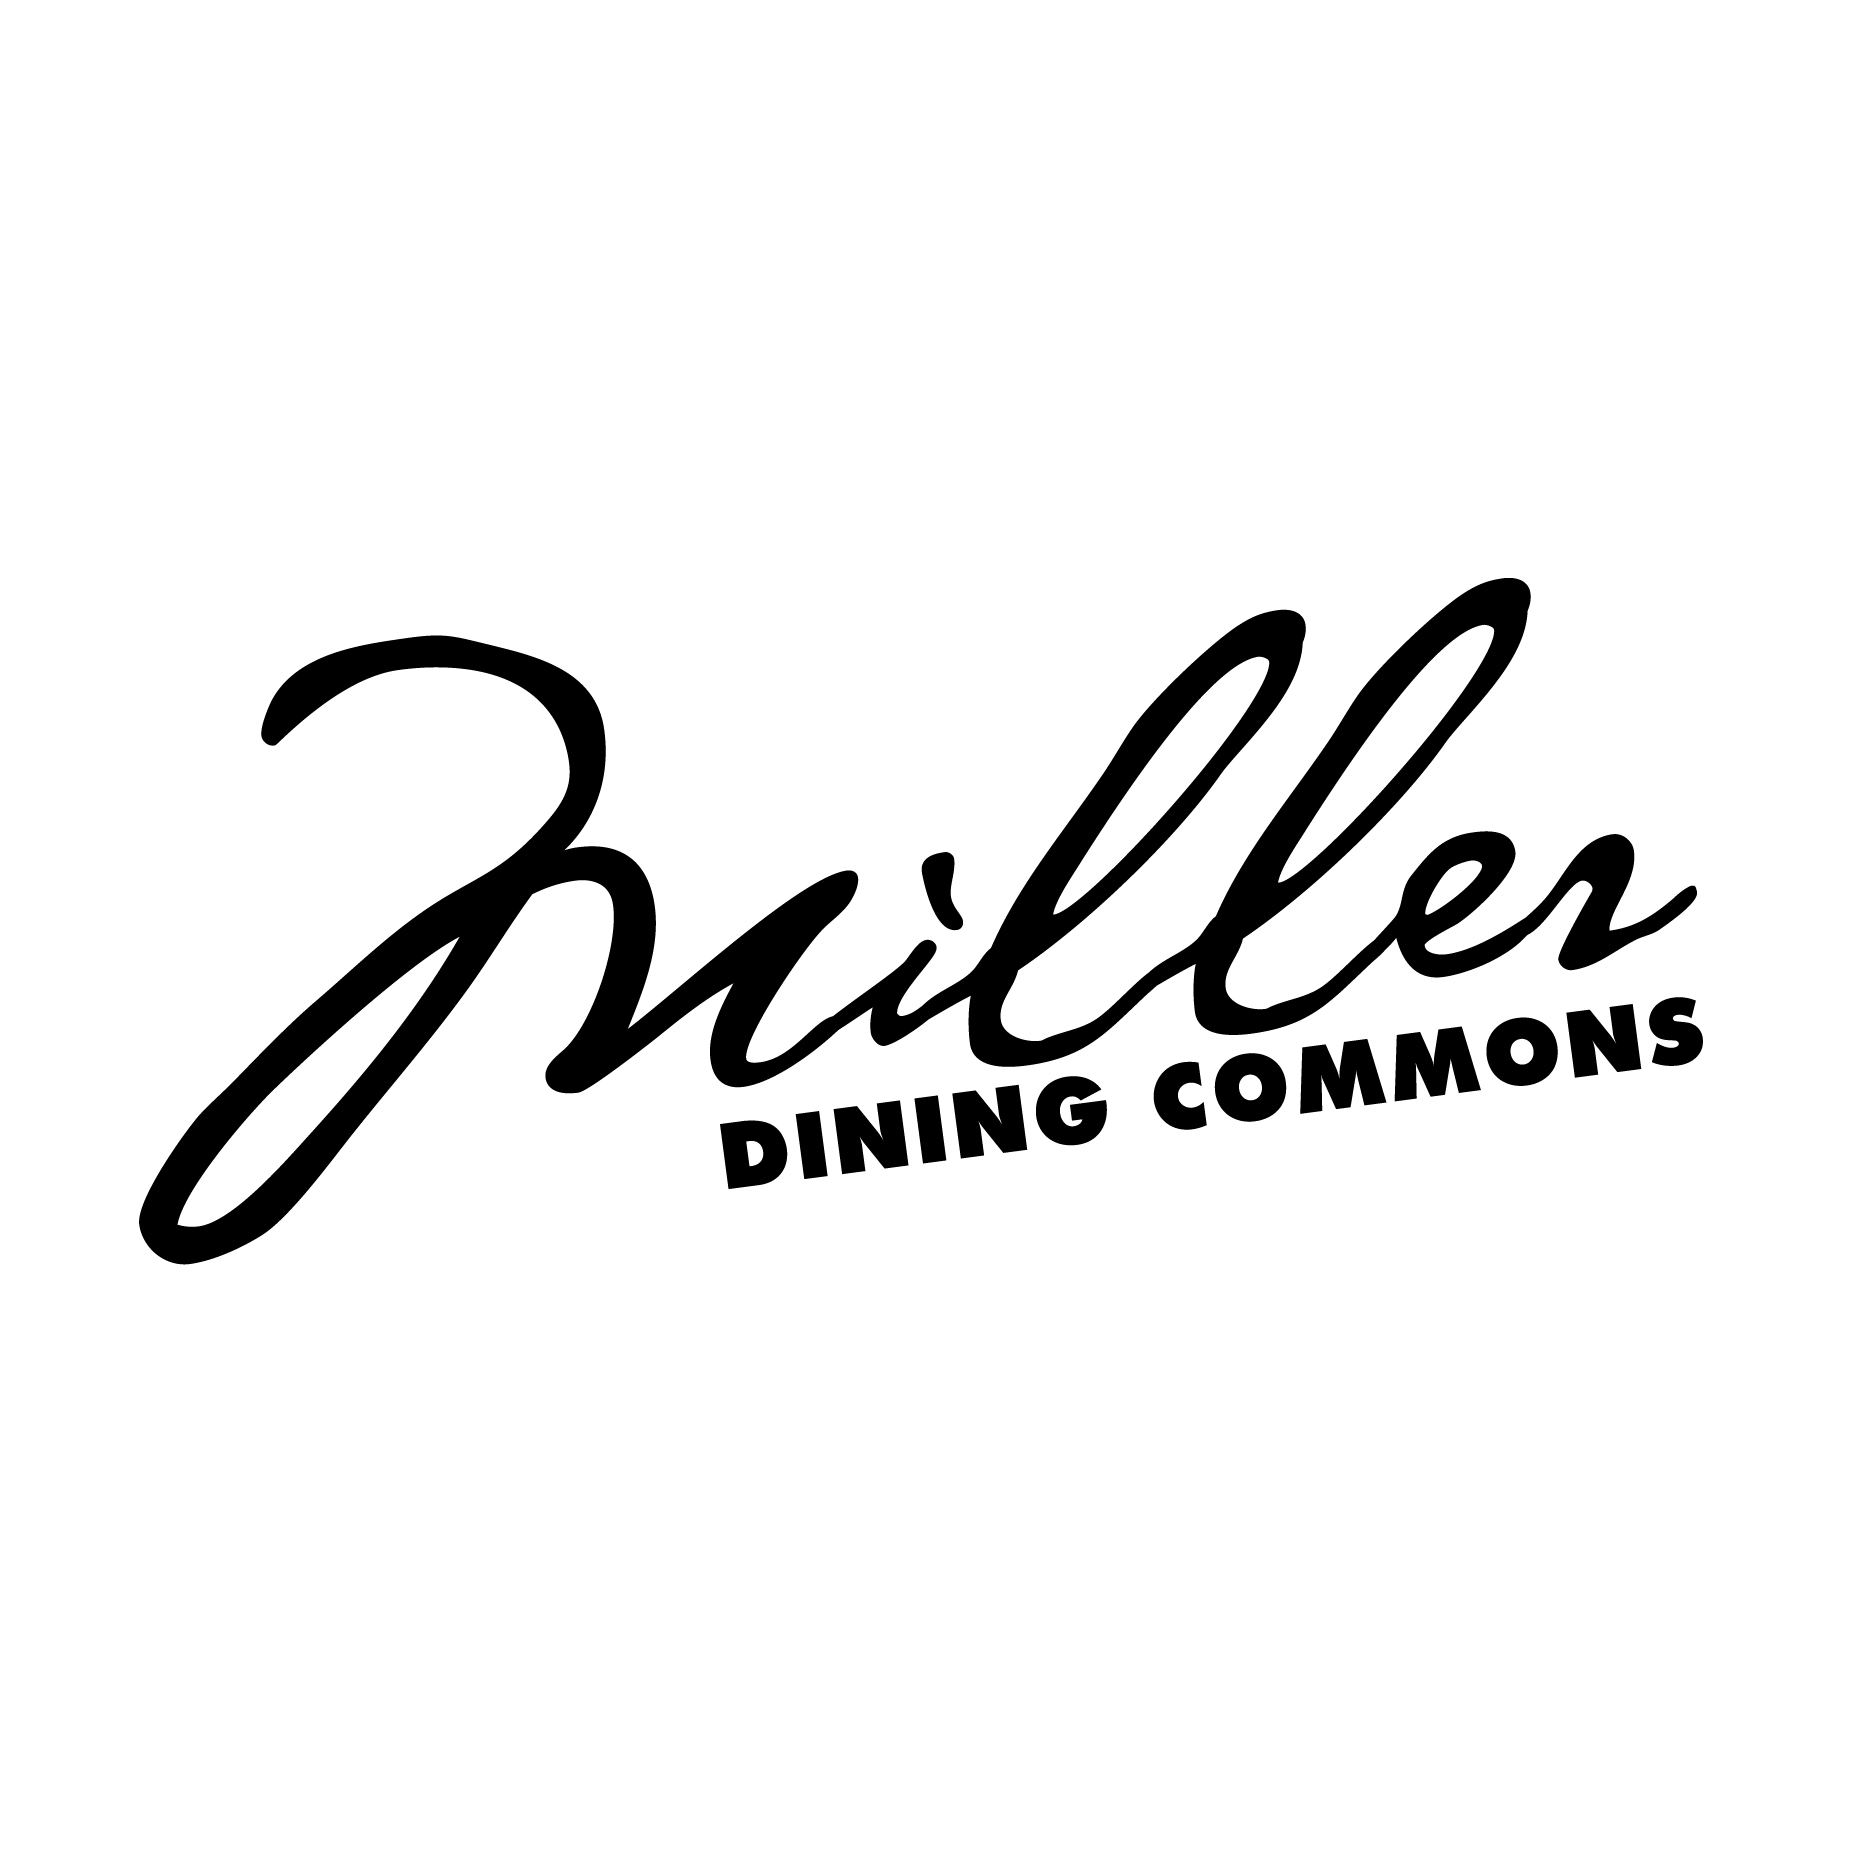 Miller Dining Commons logo